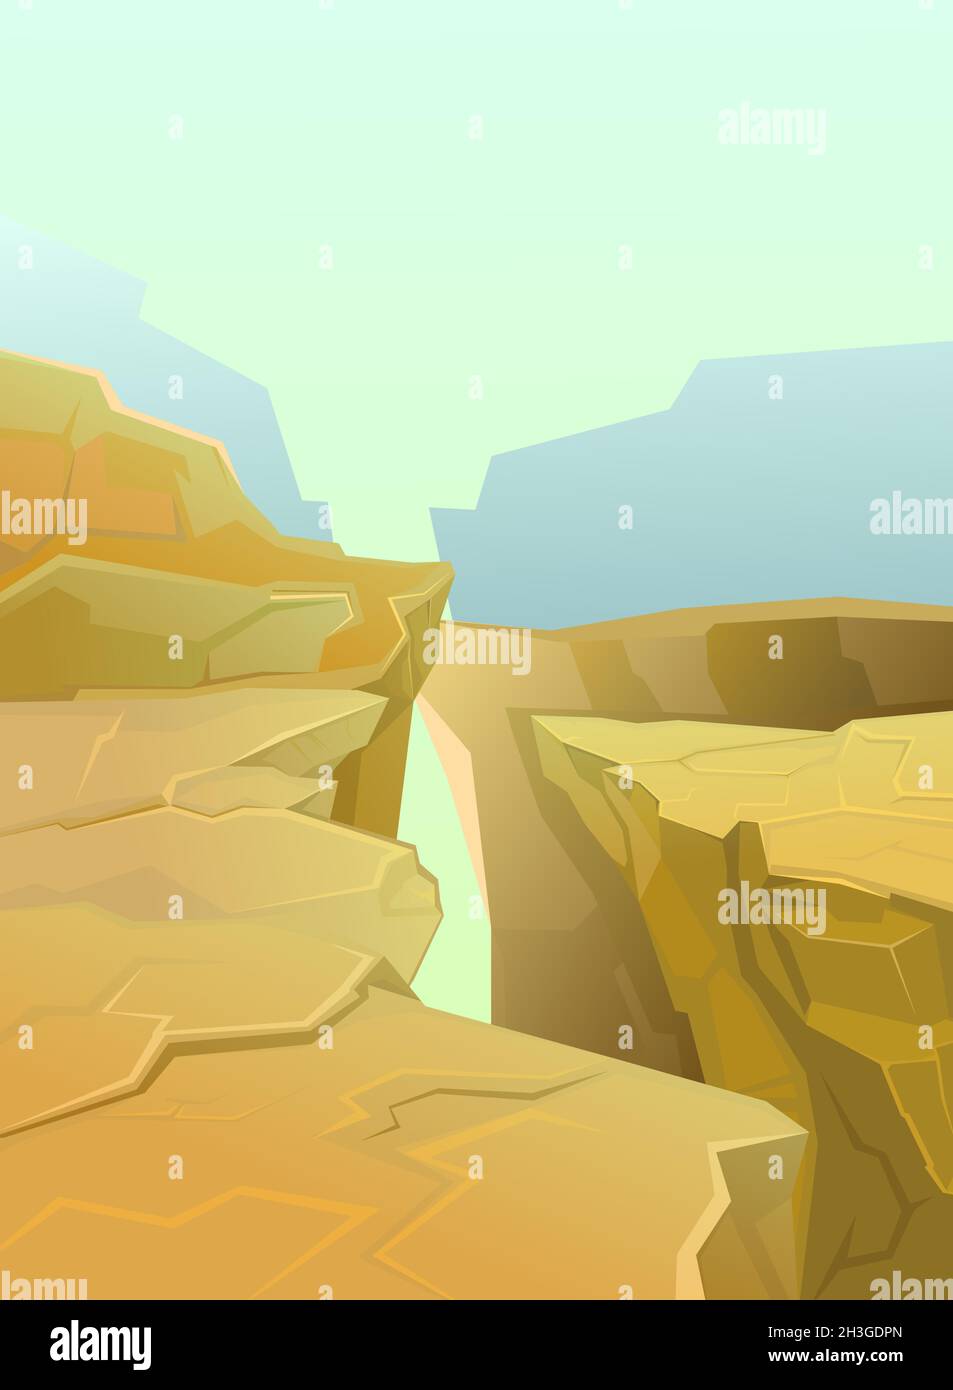 Felsige Klippen. Der Rand eines bodenlosen Abgrunds. Bergnebel. Wüstenlandschaft mit Steinen. Illustration im Cartoon-Stil flache Design. Vektor Stock Vektor